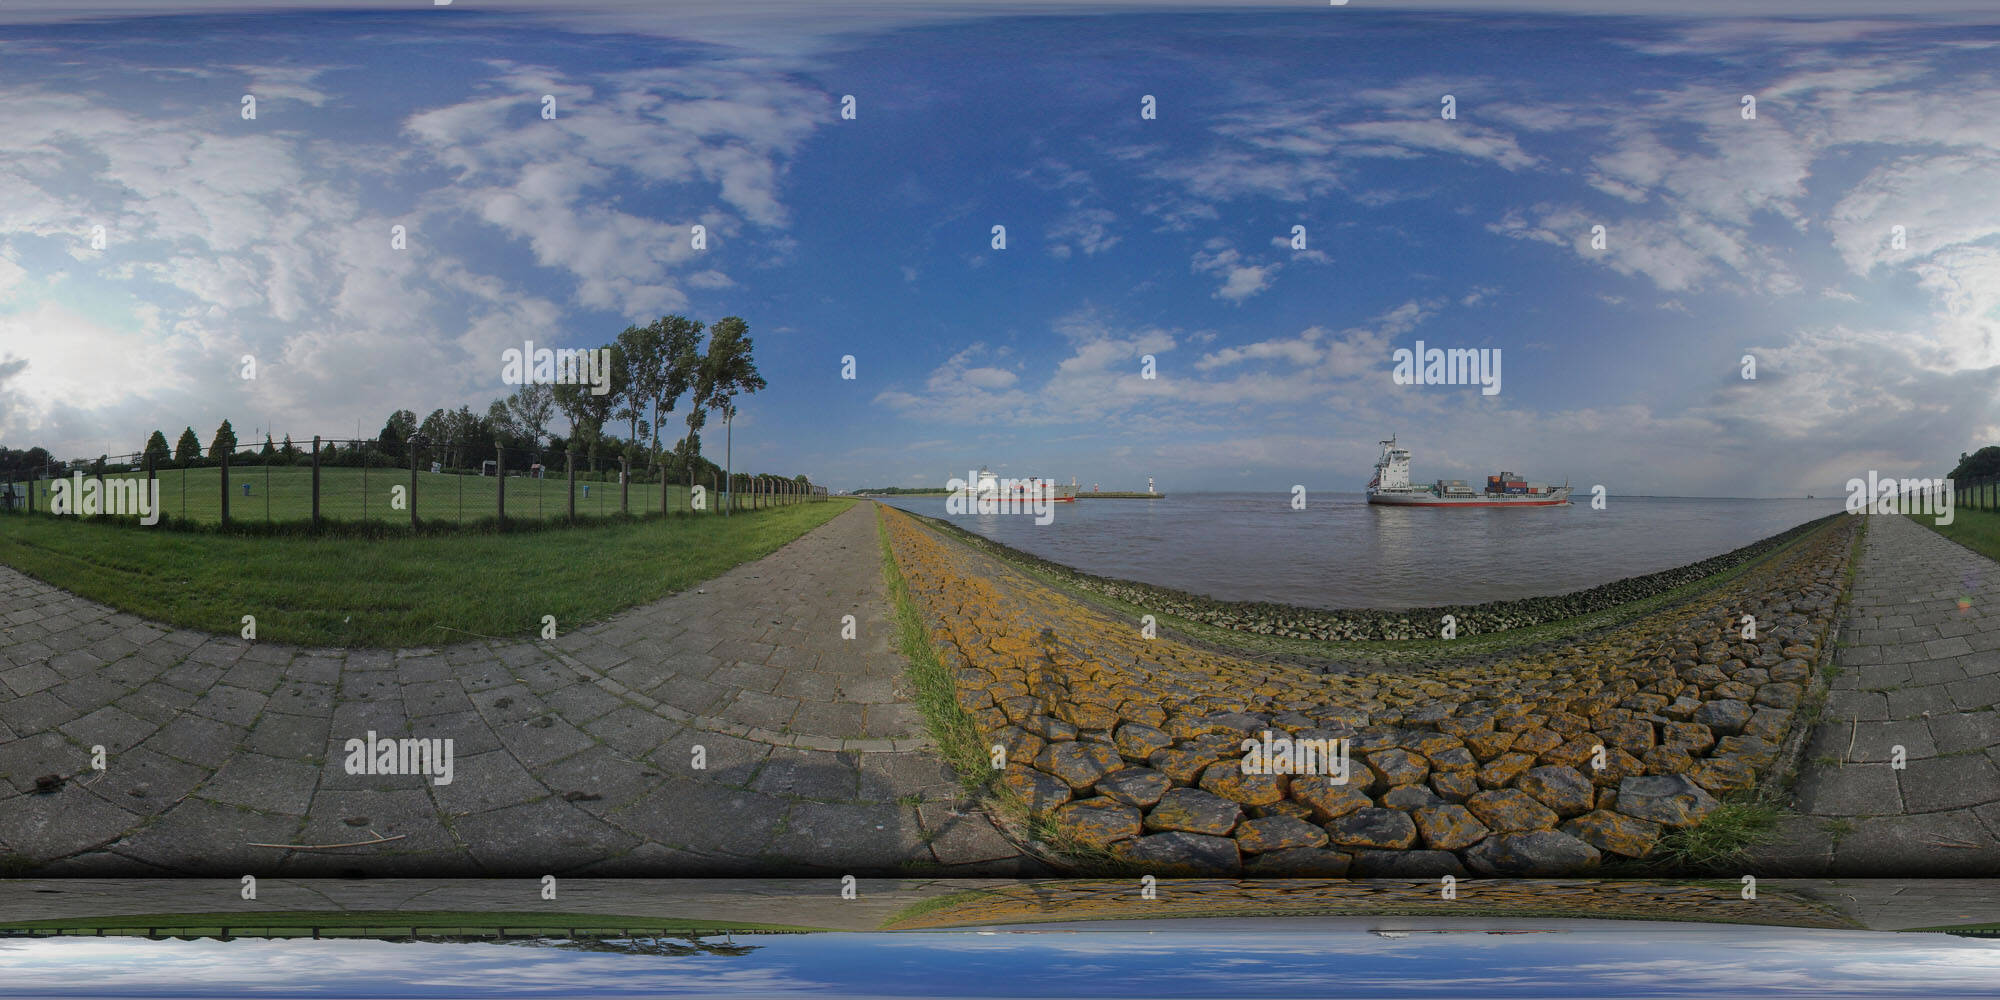 Vista panorámica en 360 grados de Elbschleuse1 3